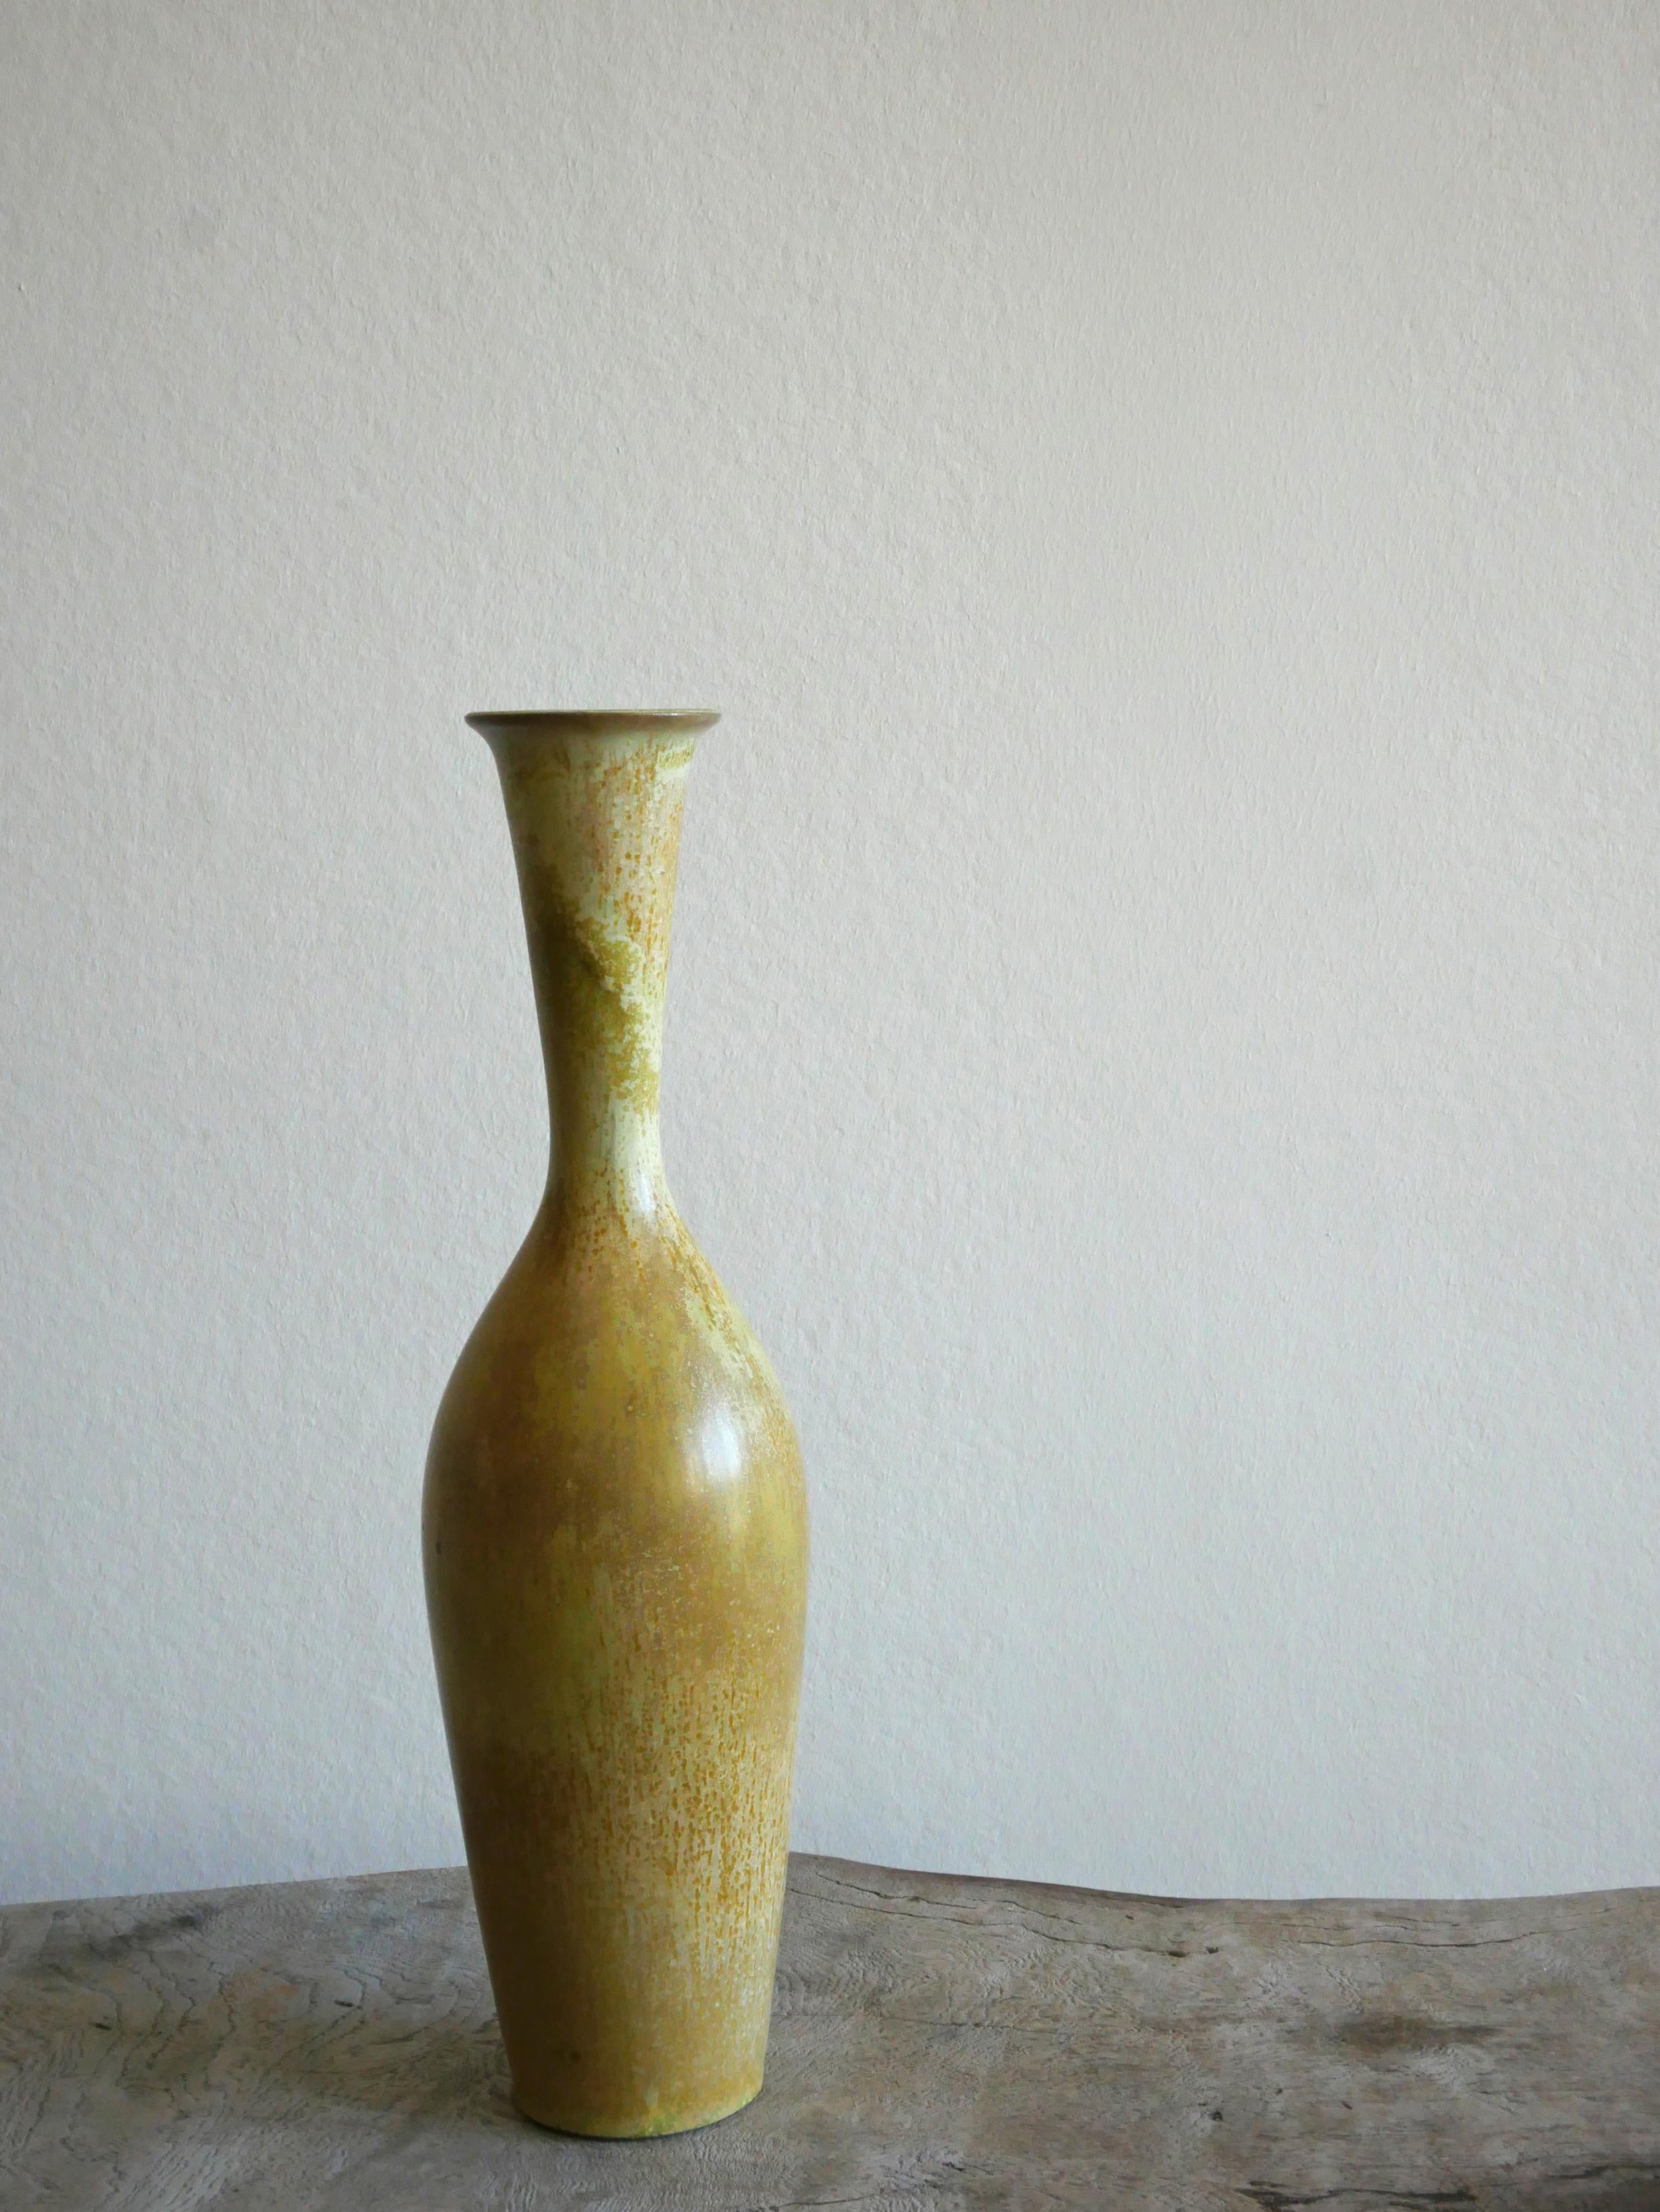 Diese wunderbare Vase wurde von Gunnar Nylund in der Rörstrand Fabrik in den 1950er Jahren in Schweden entworfen und hergestellt.

Die Glasur in grünen und gelben Farben ist erstaunlich und passt wunderbar zu der flaschenhalsförmigen Vasenform.

Die